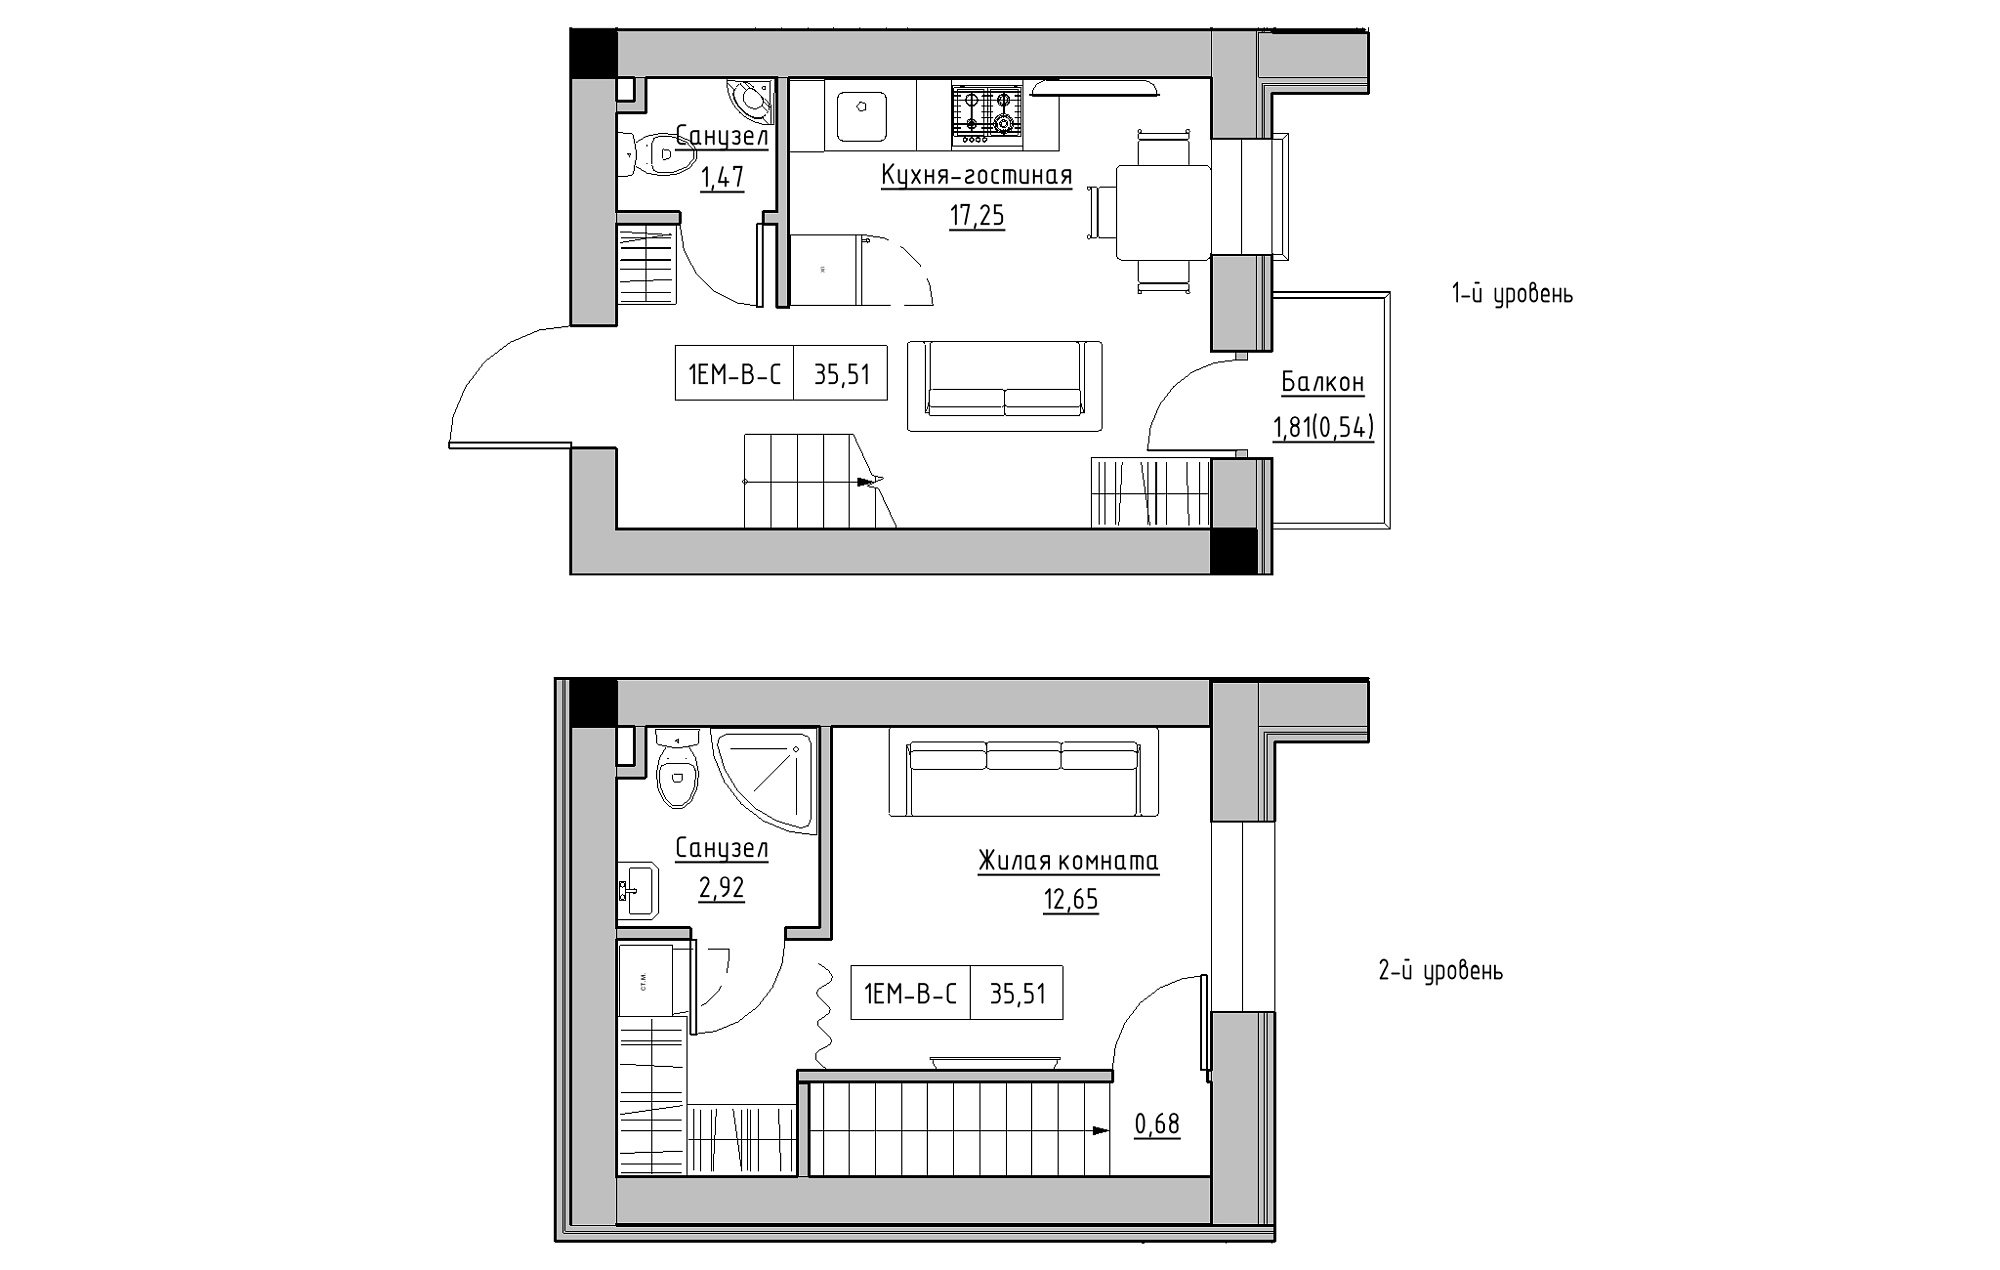 Planning 2-lvl flats area 35.51m2, KS-018-05/0013.